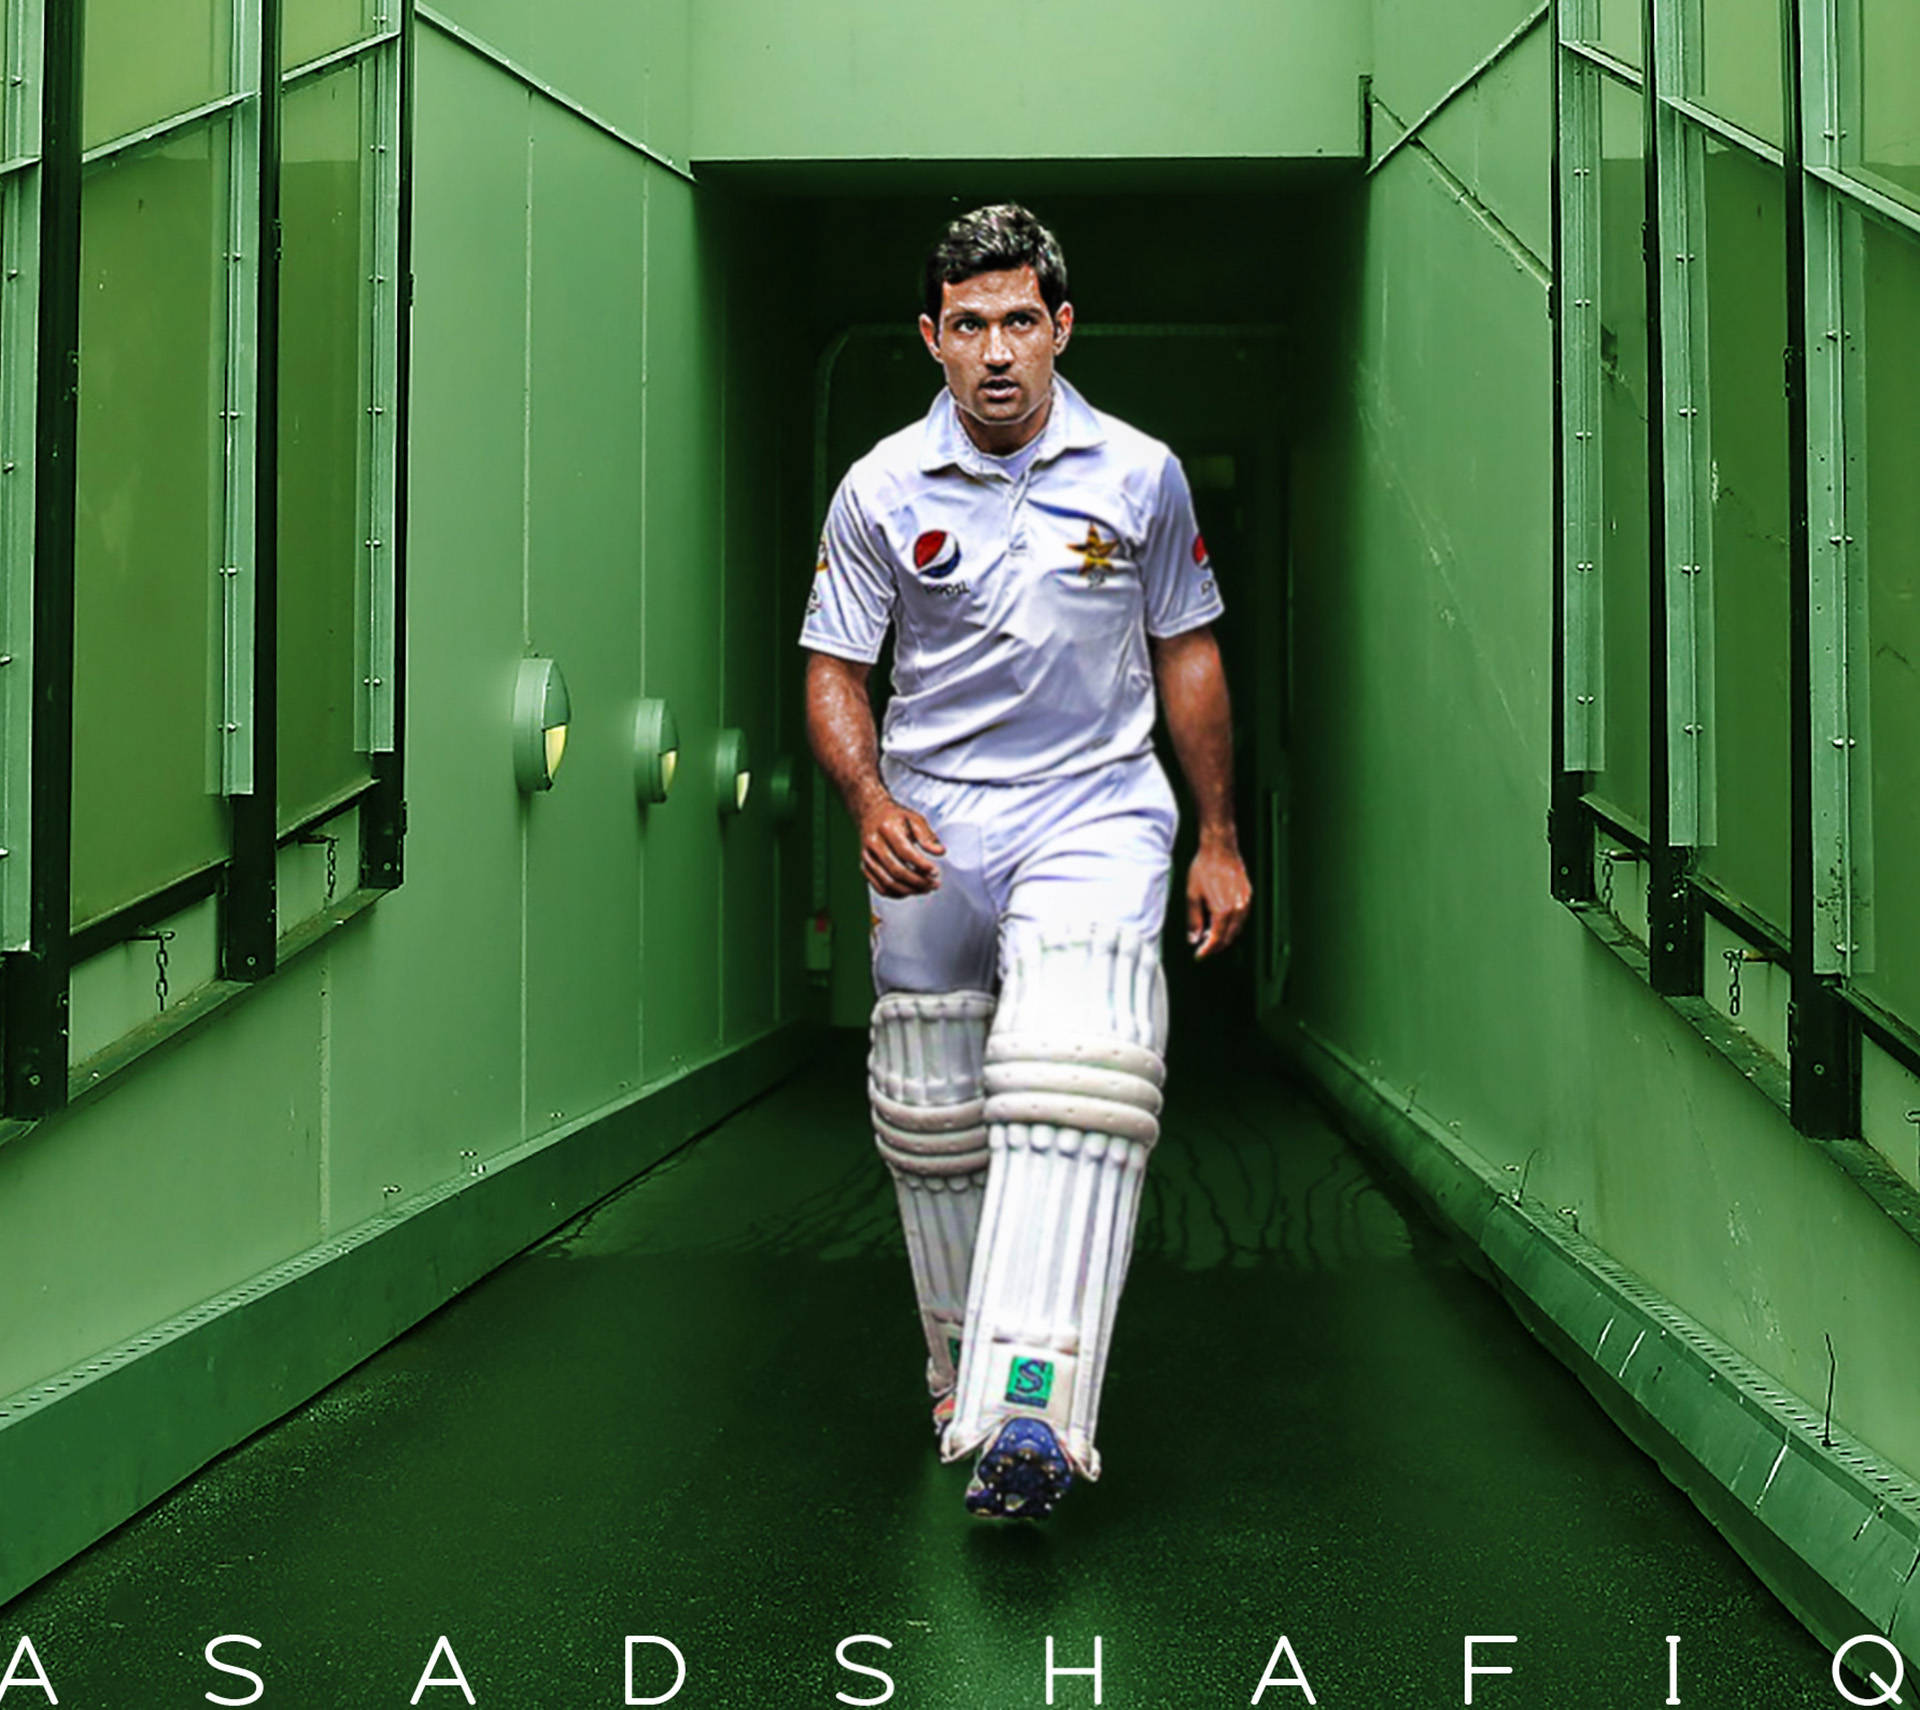 Spirited Cricketer In Action - Pakistan Cricket Team Background